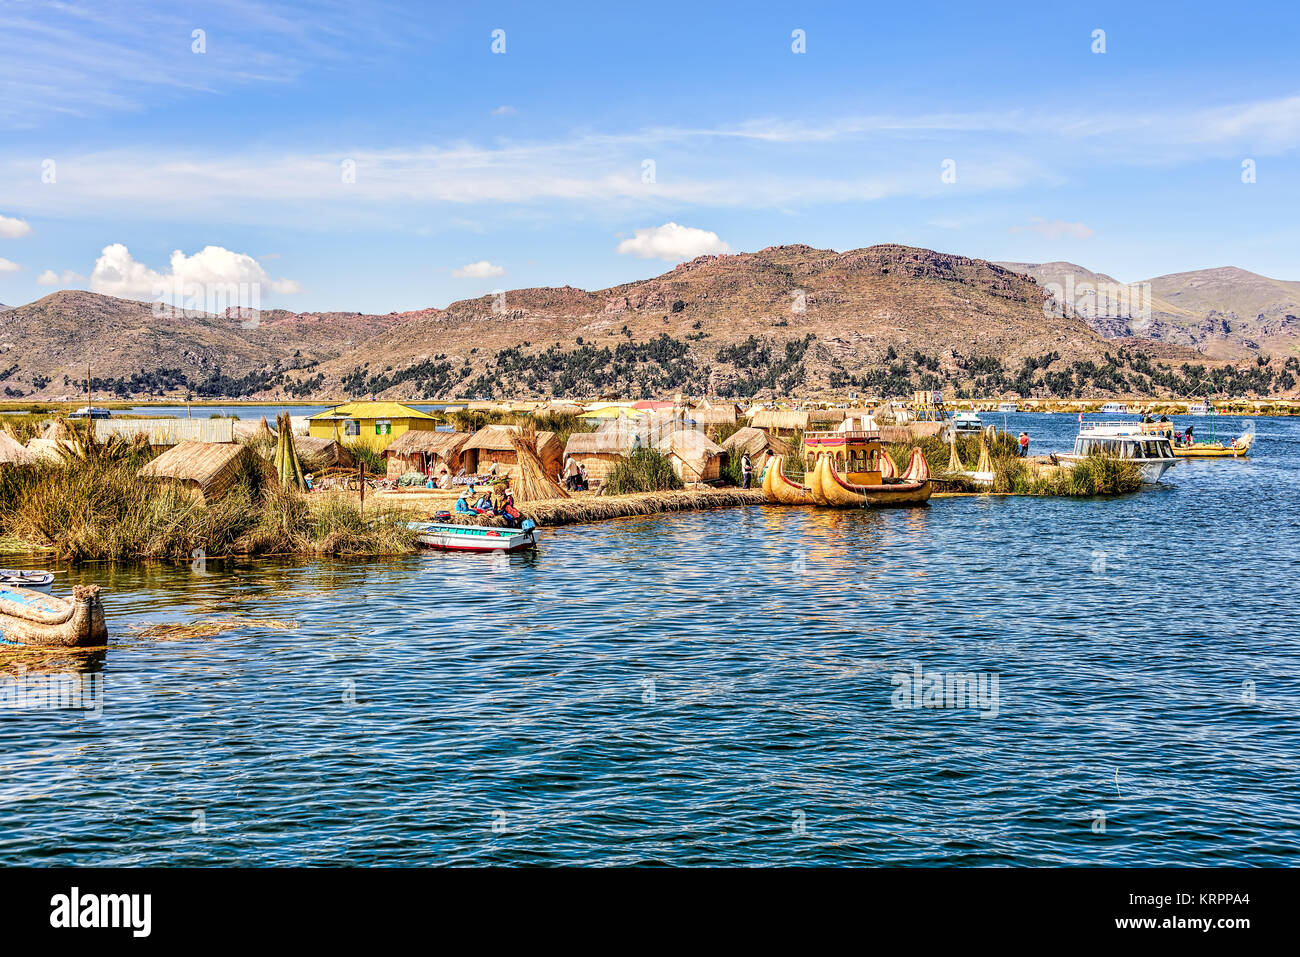 Îles flottantes faites de roseaux sur le lac Titicaca sous un ciel bleu avec quelques nuages blancs Banque D'Images